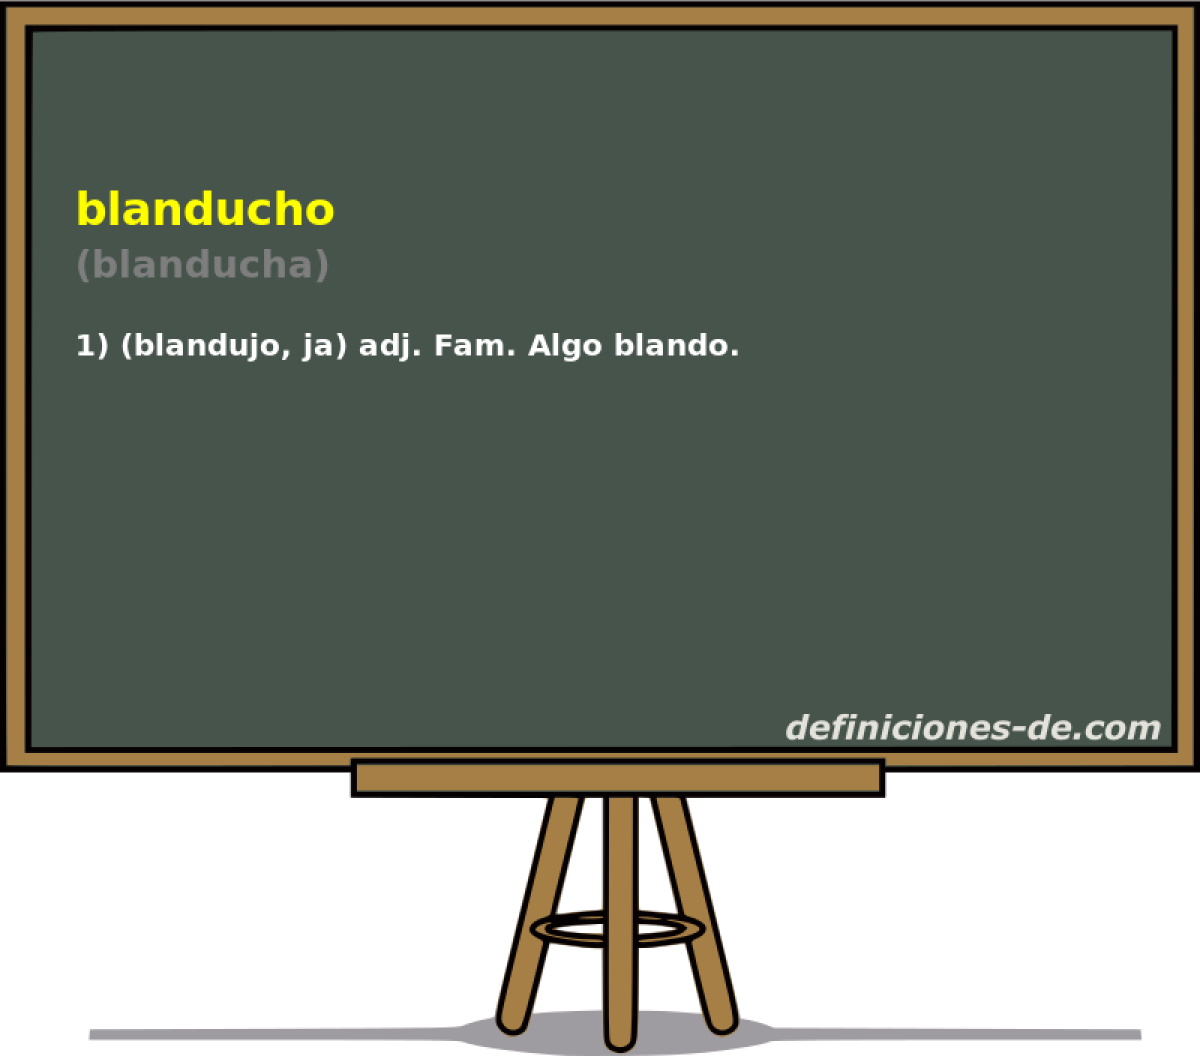 blanducho (blanducha)